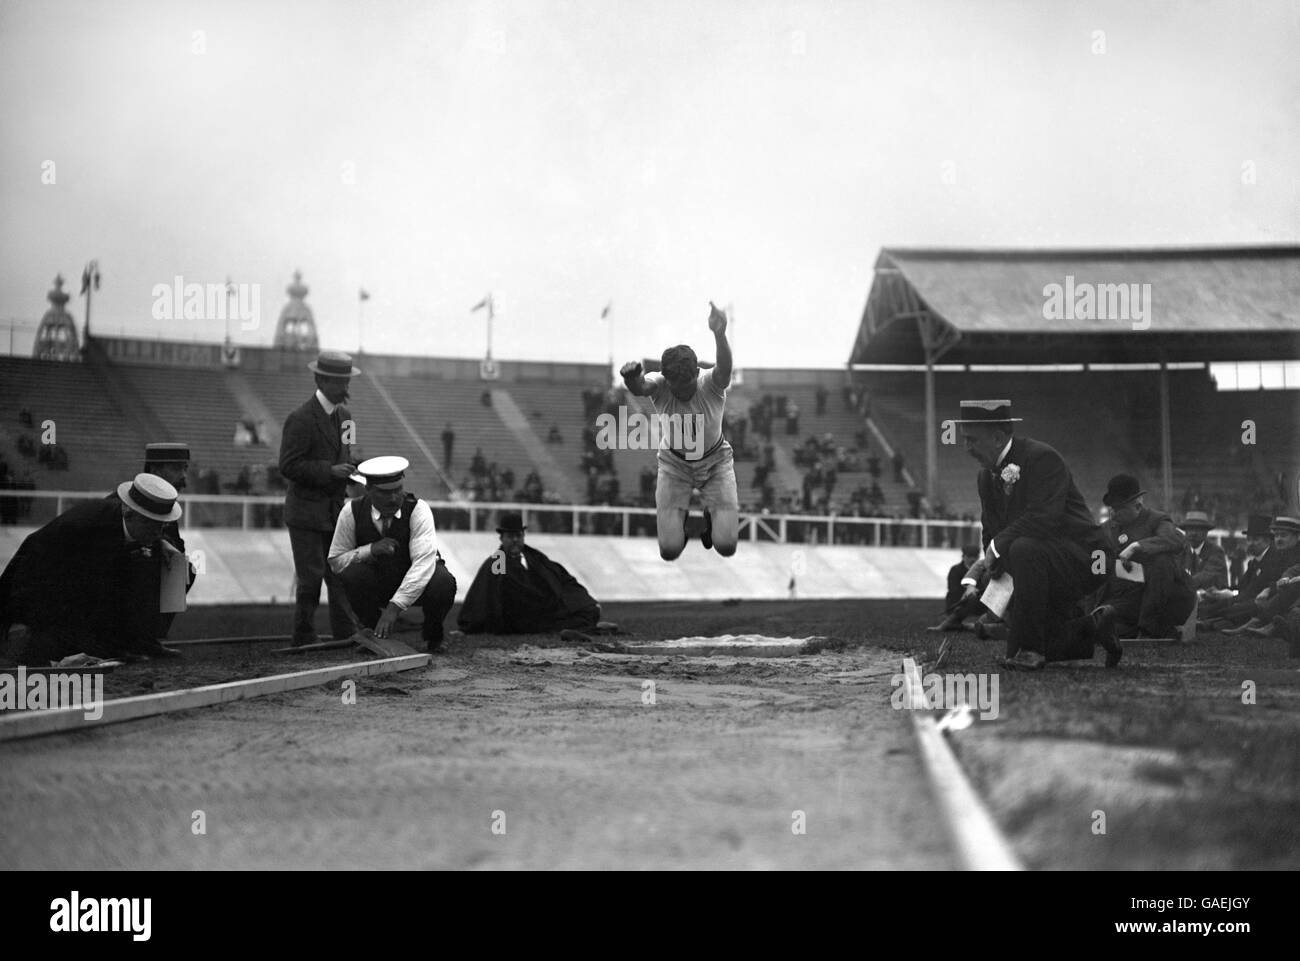 Jeux Olympiques d'été 1908 - Athlétisme - Stade de White City.L'un des sept concurrents américains en action pendant l'événement de saut long masculin. Banque D'Images